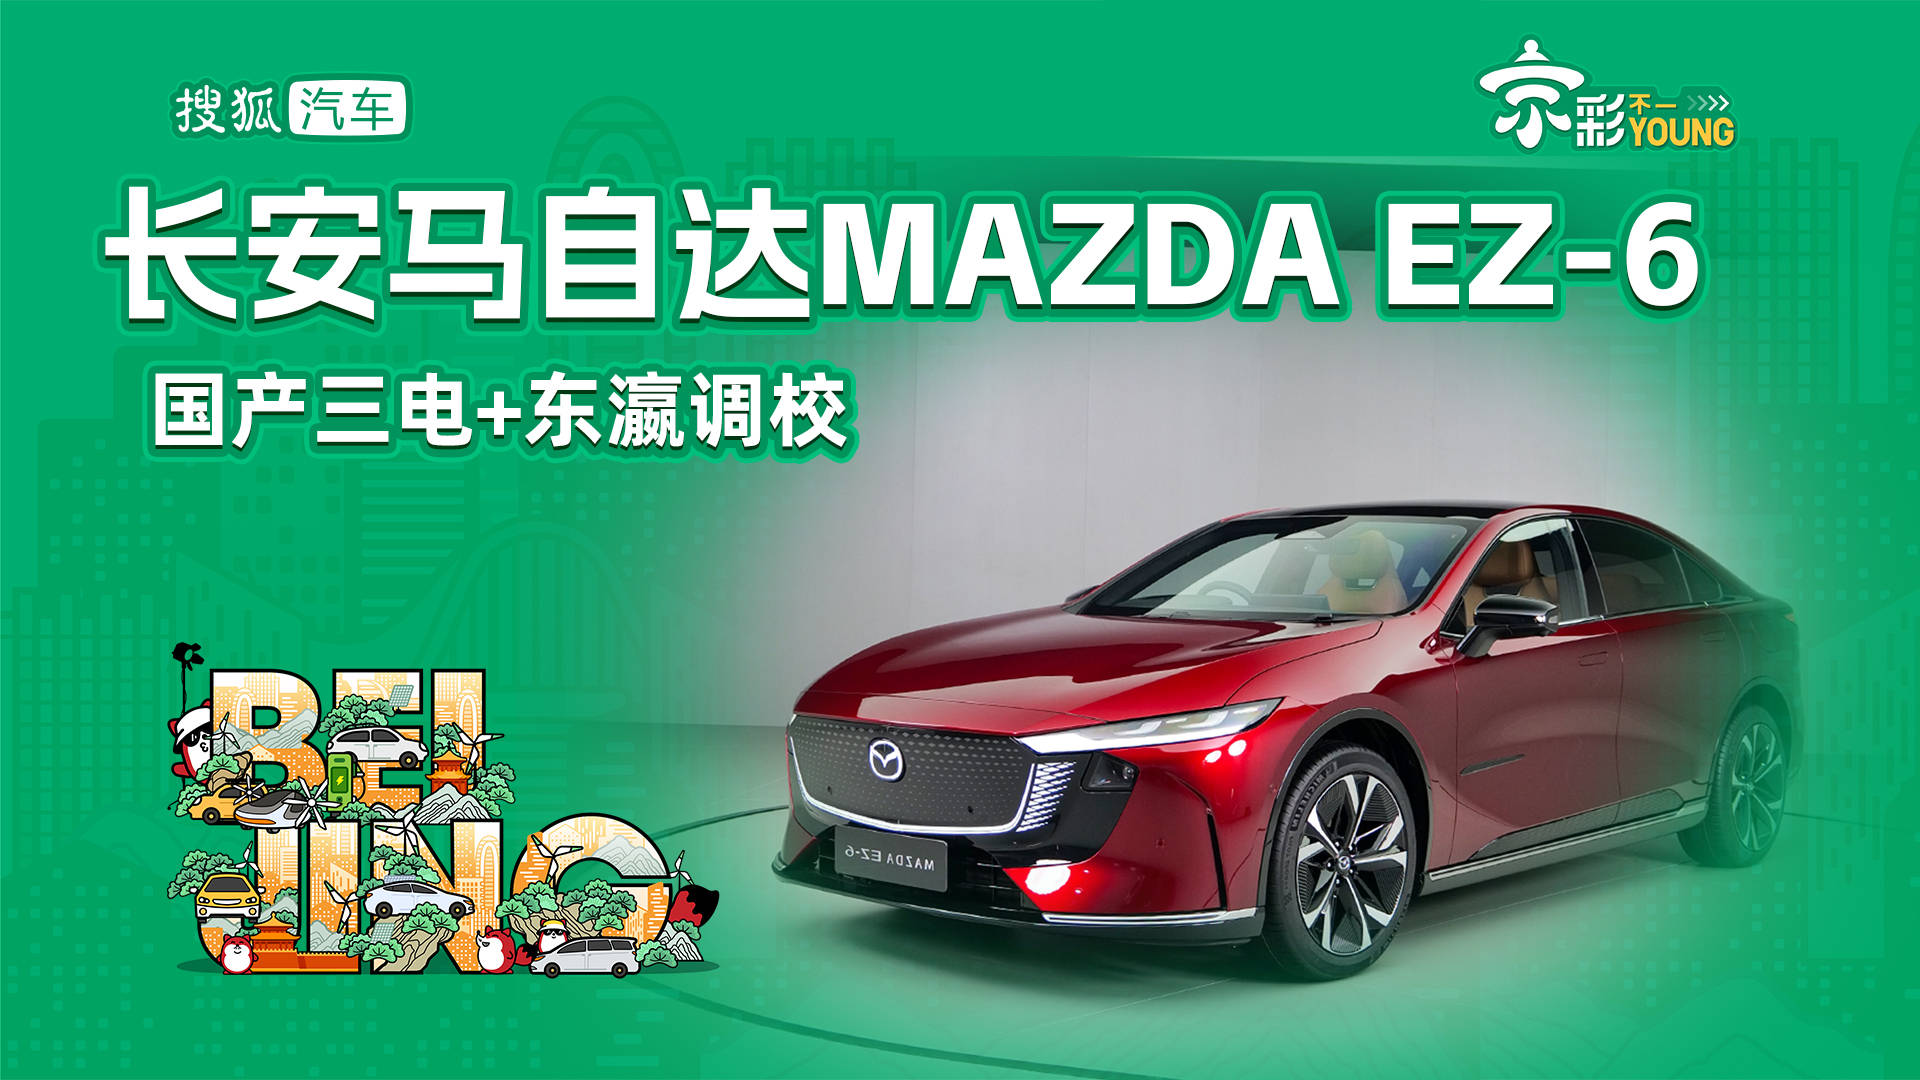 中国制造三电+日本设计的MADAEZ-6是你想要的新合资能源吗？_搜狐汽车_搜狐。com